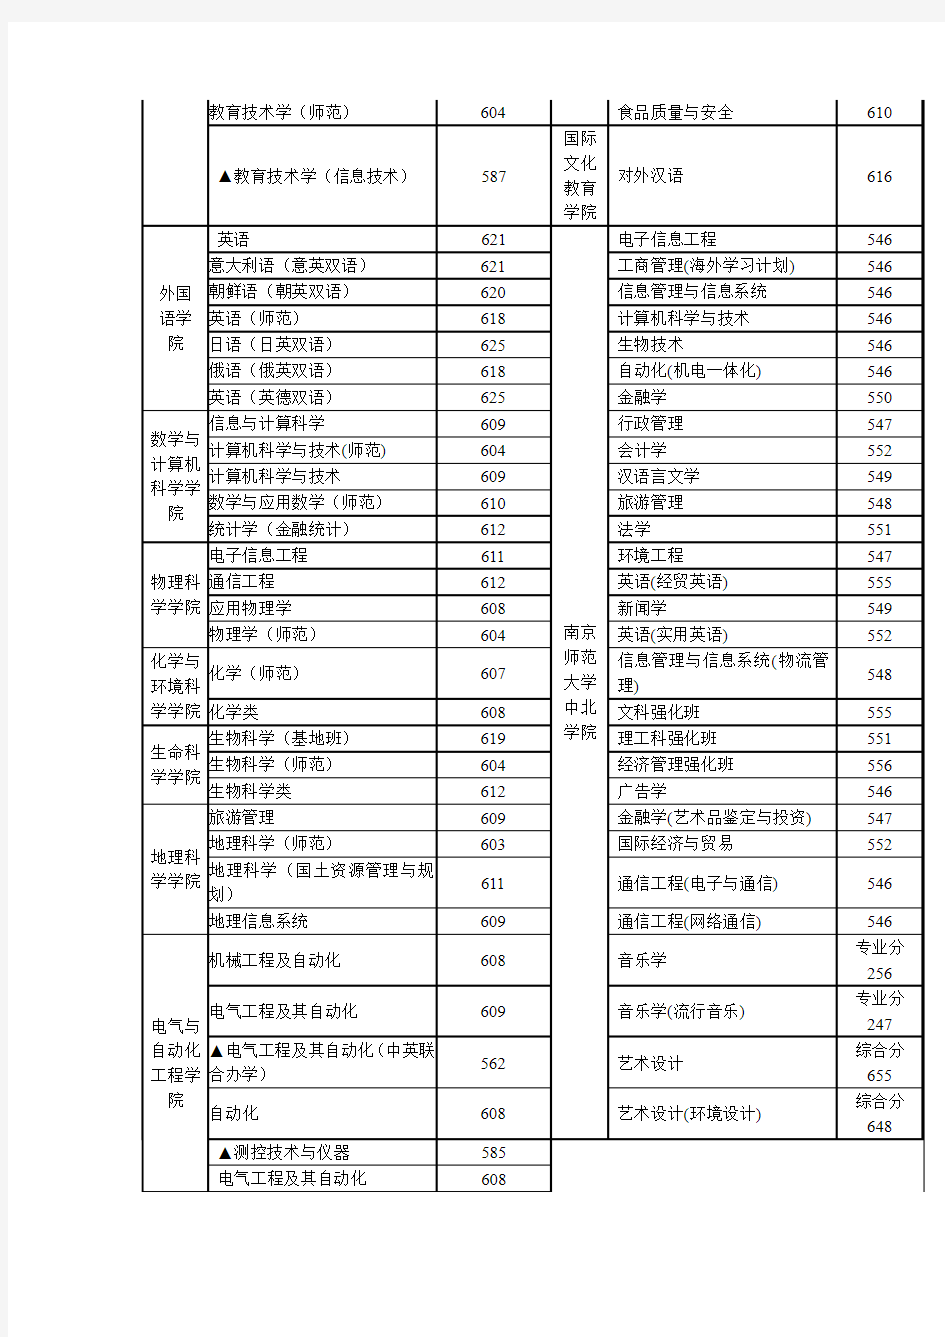 南京师范大学2007年江苏省录取分数线